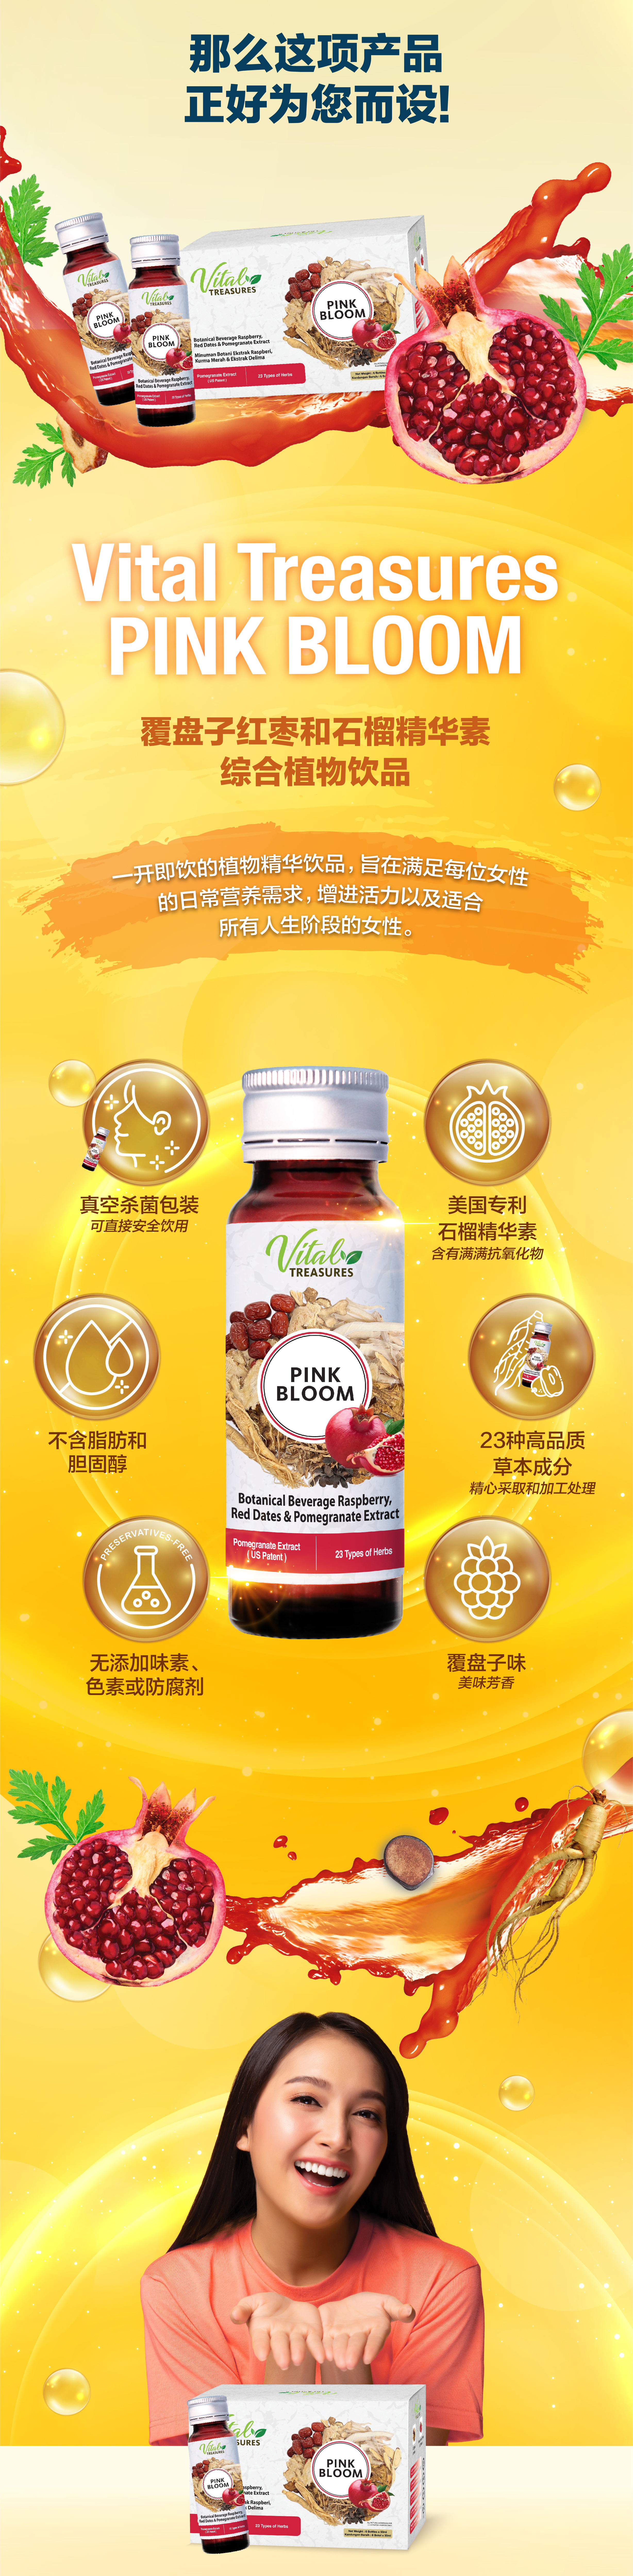 VITAL TREASURES PINK BLOOM 覆盘子红枣和石榴精华素综合植物饮品